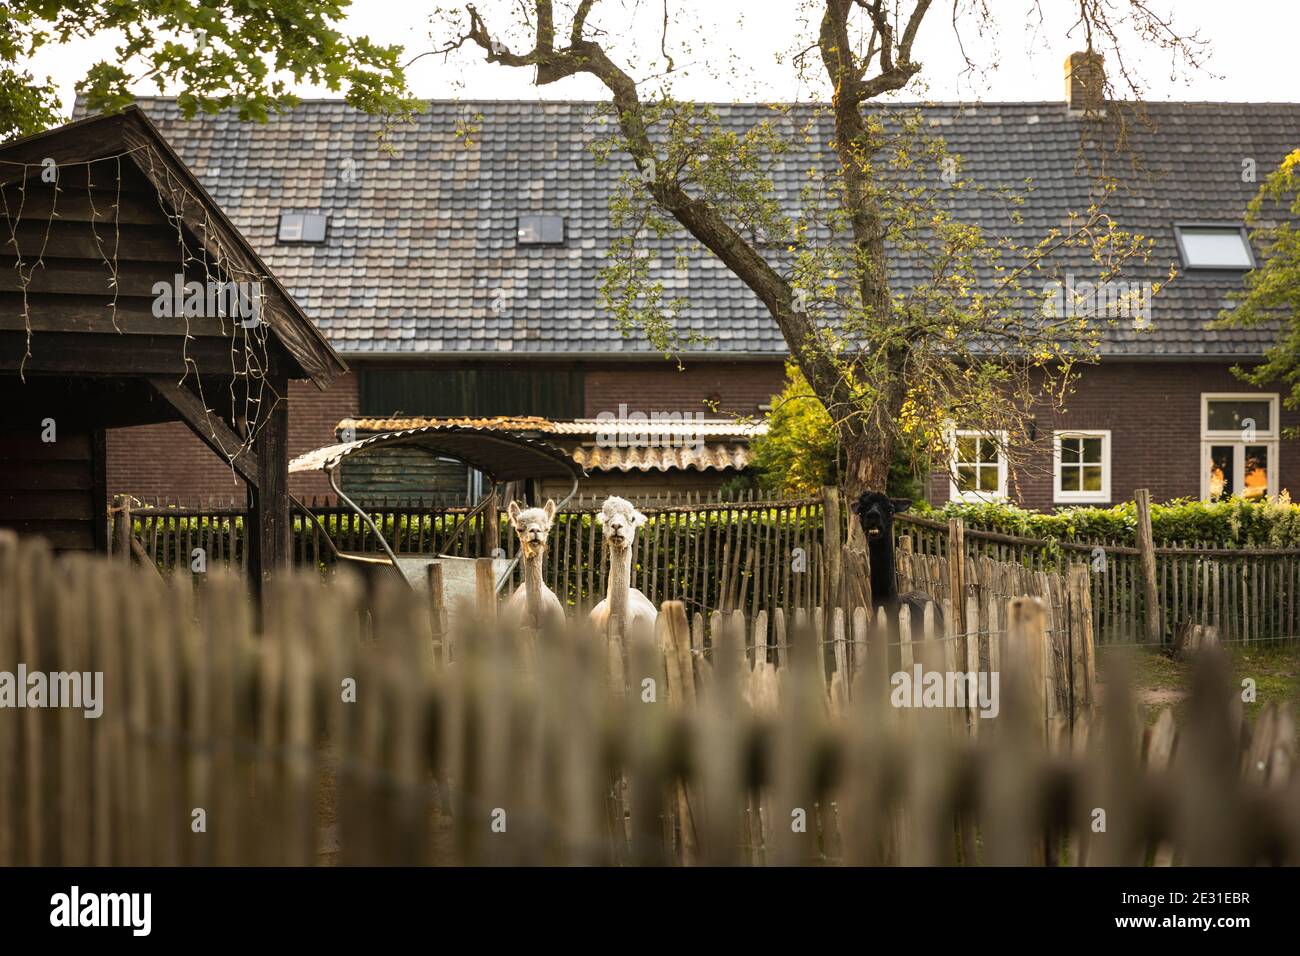 Drei Alpaka essen und schauen in einem von Holzzäunen umgebenen Agarden in einer ländlichen Gegend in den Niederlanden auf. Holländische Landschaft an einem sonnigen Tag Stockfoto